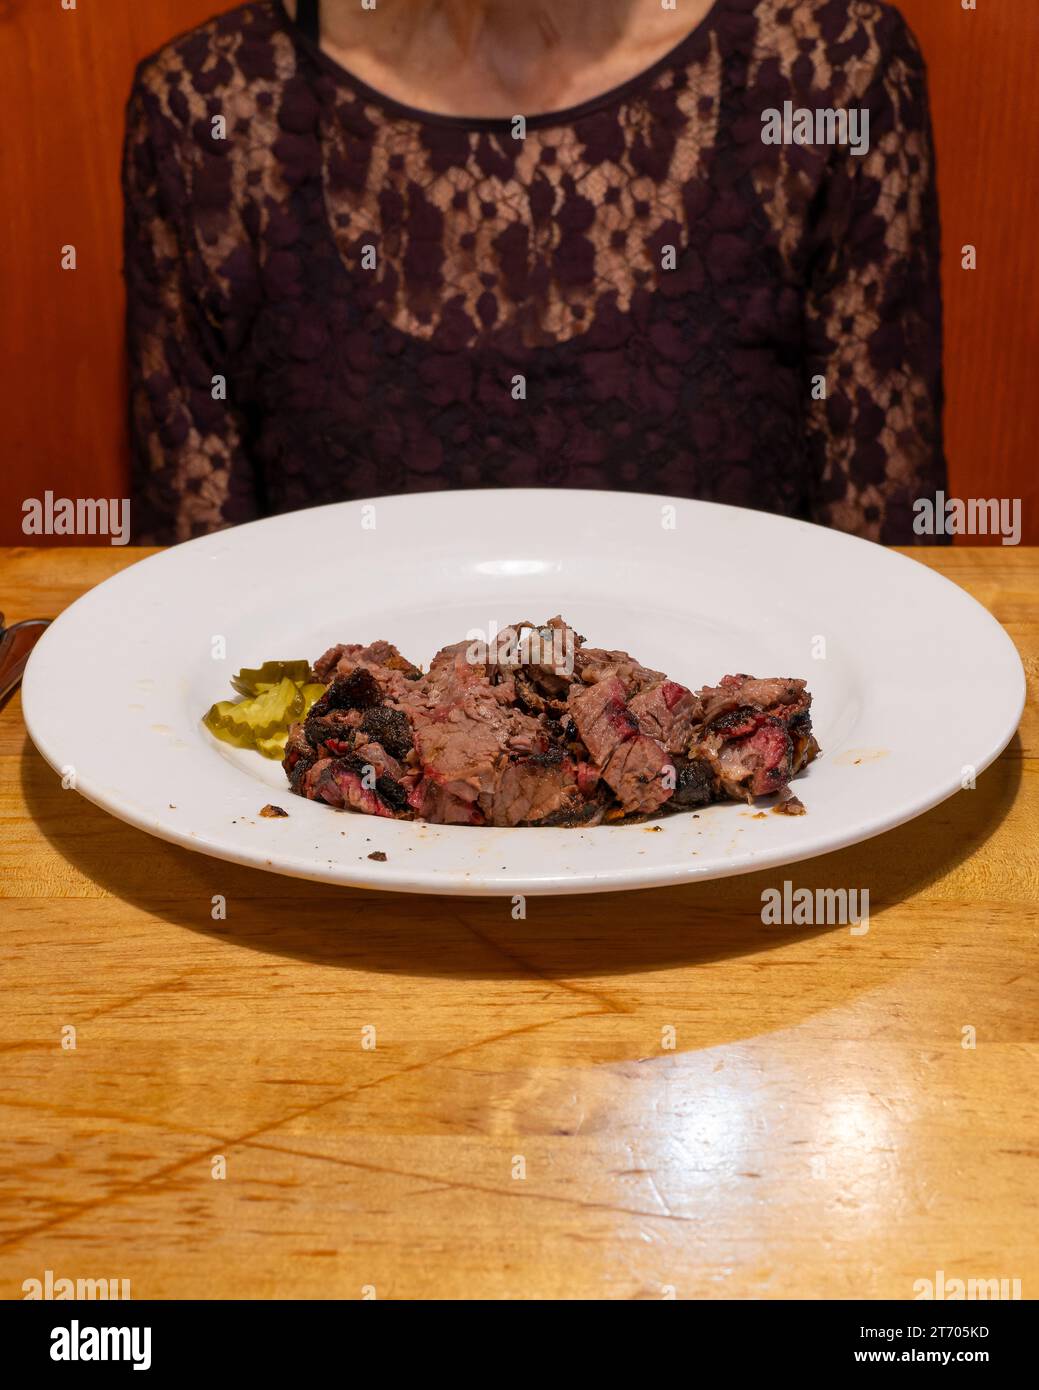 Frau, die an einem Tisch saß, mit einem Teller mit gekochtem Brustfleisch vor sich. Typische Keto-Diät- oder Fleischfresser-Diät-Mahlzeit. Stockfoto